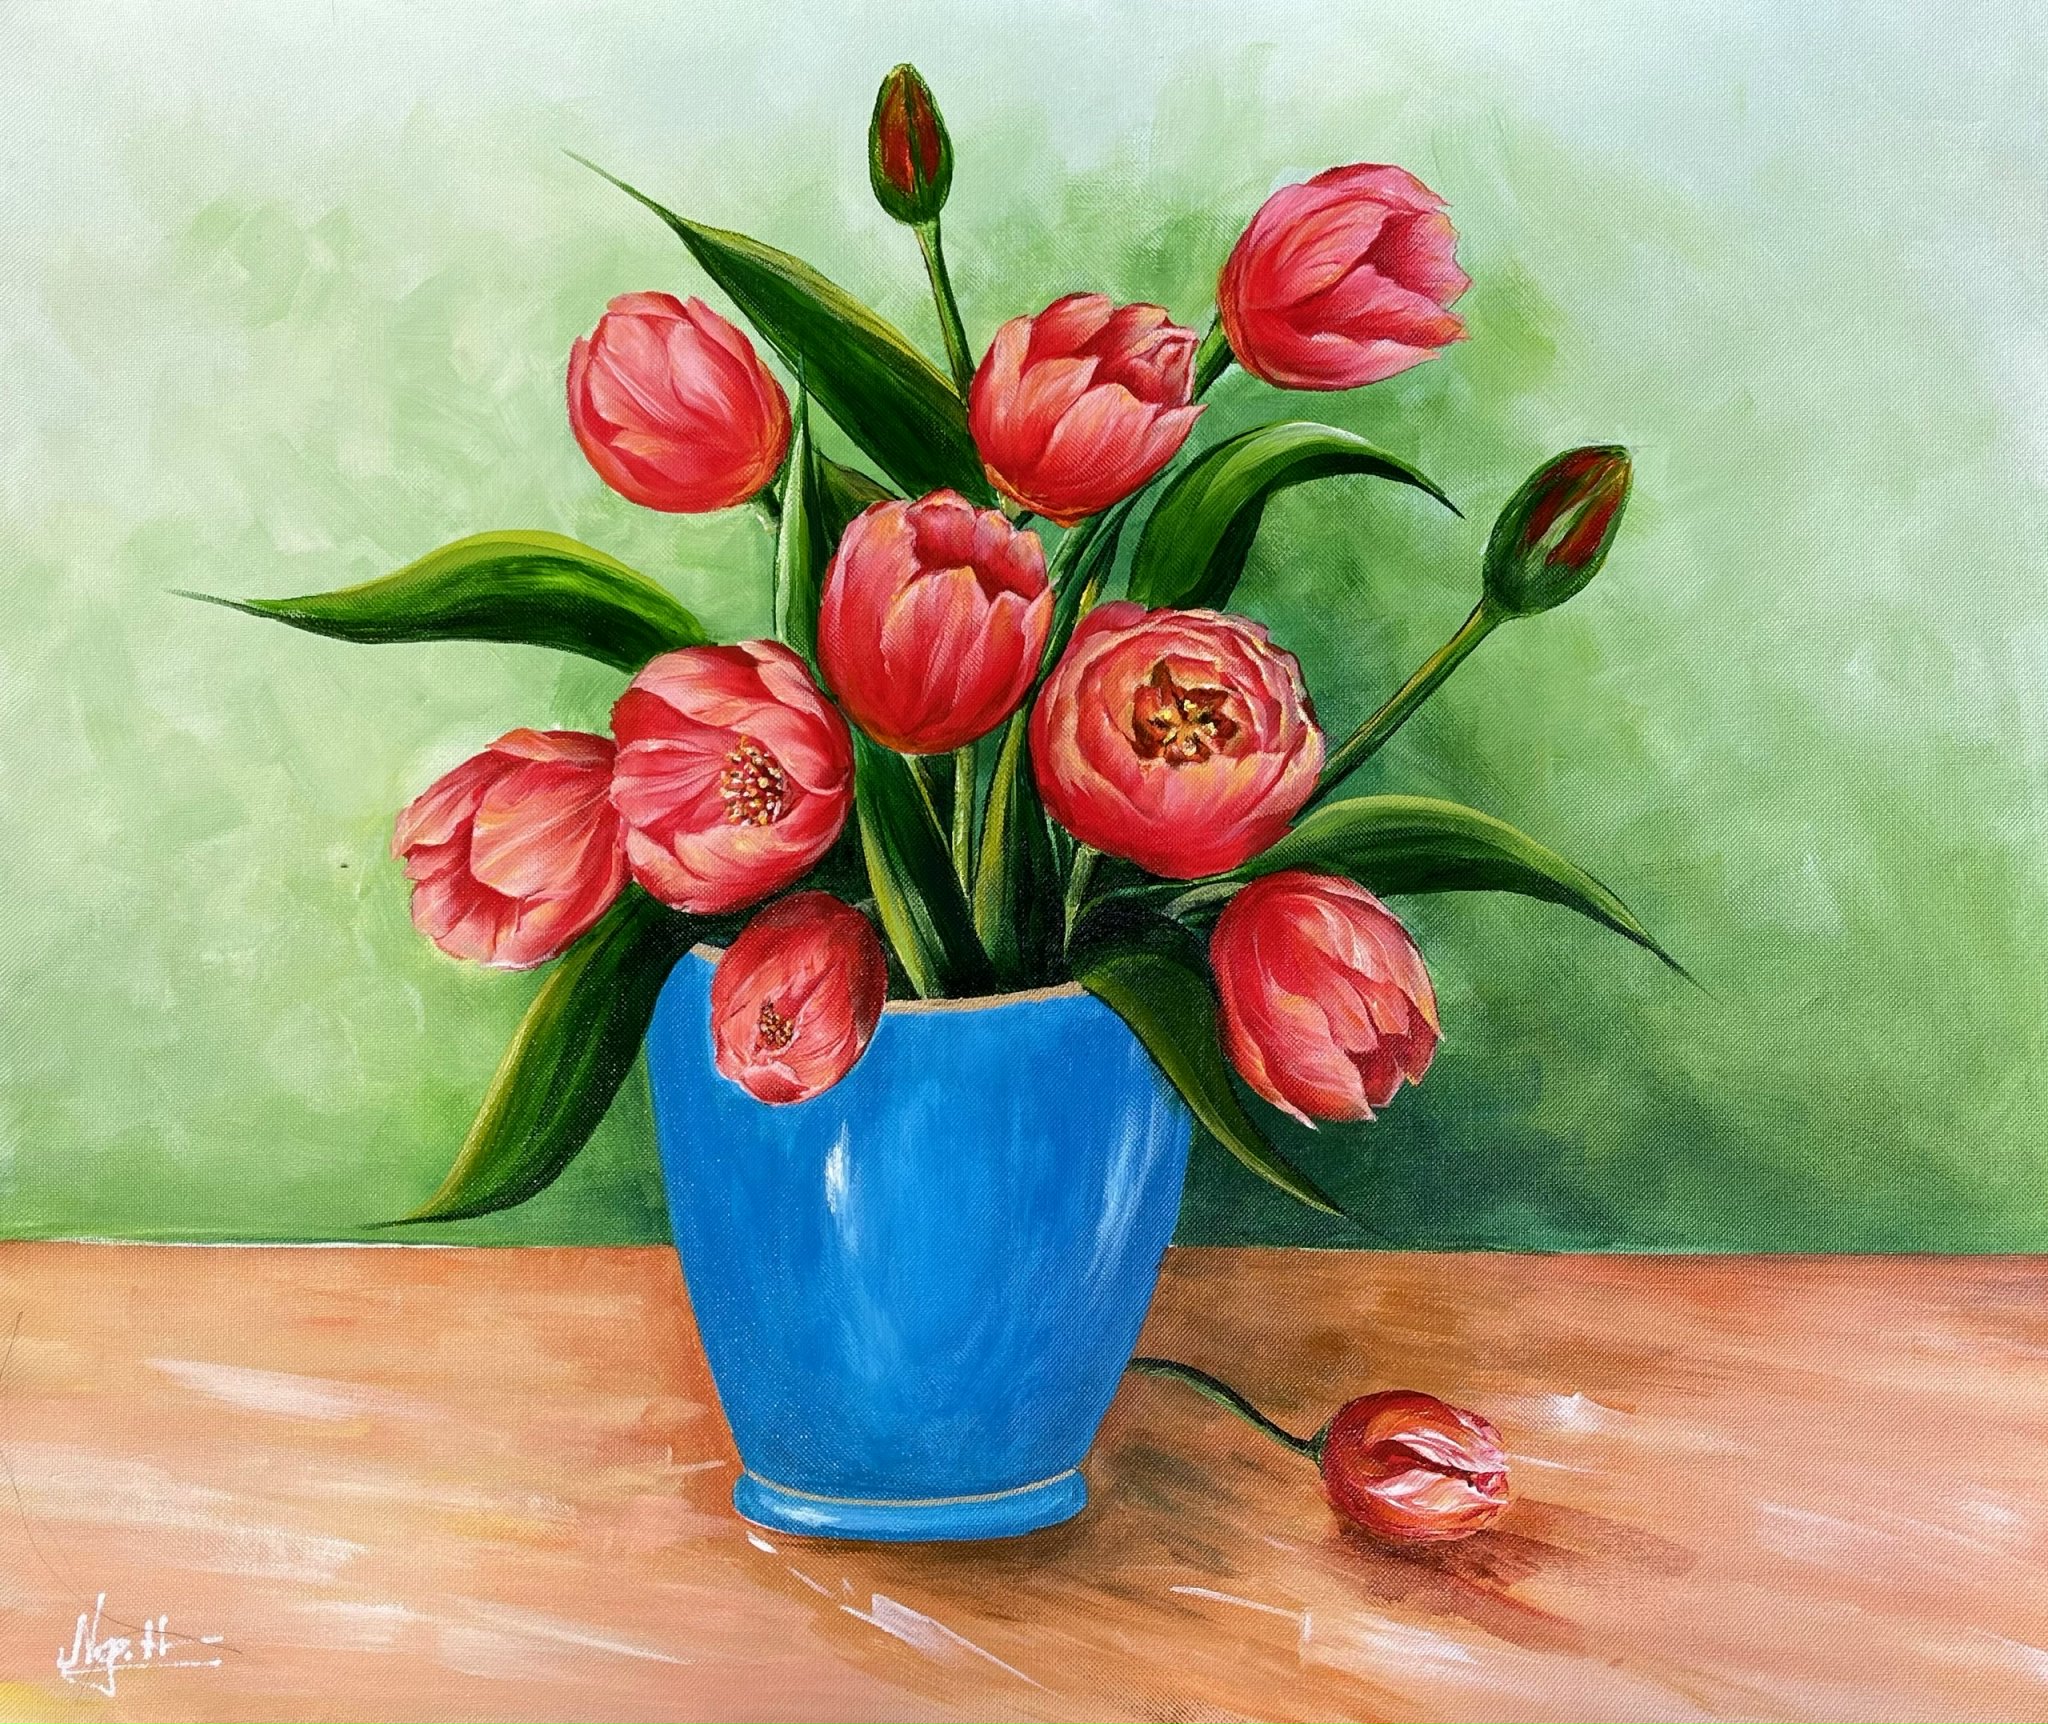 Bình hoa tulip lấp lánh sắc màu trên màn trắng như một tác phẩm nghệ thuật rực rỡ. Đây là một bức ảnh không thể bỏ qua nếu bạn là một người yêu hoa. Những màu sắc tươi tắn và hương thơm đậm nét của hoa tulip sẽ chắc chắn khiến bạn trầm trồ.